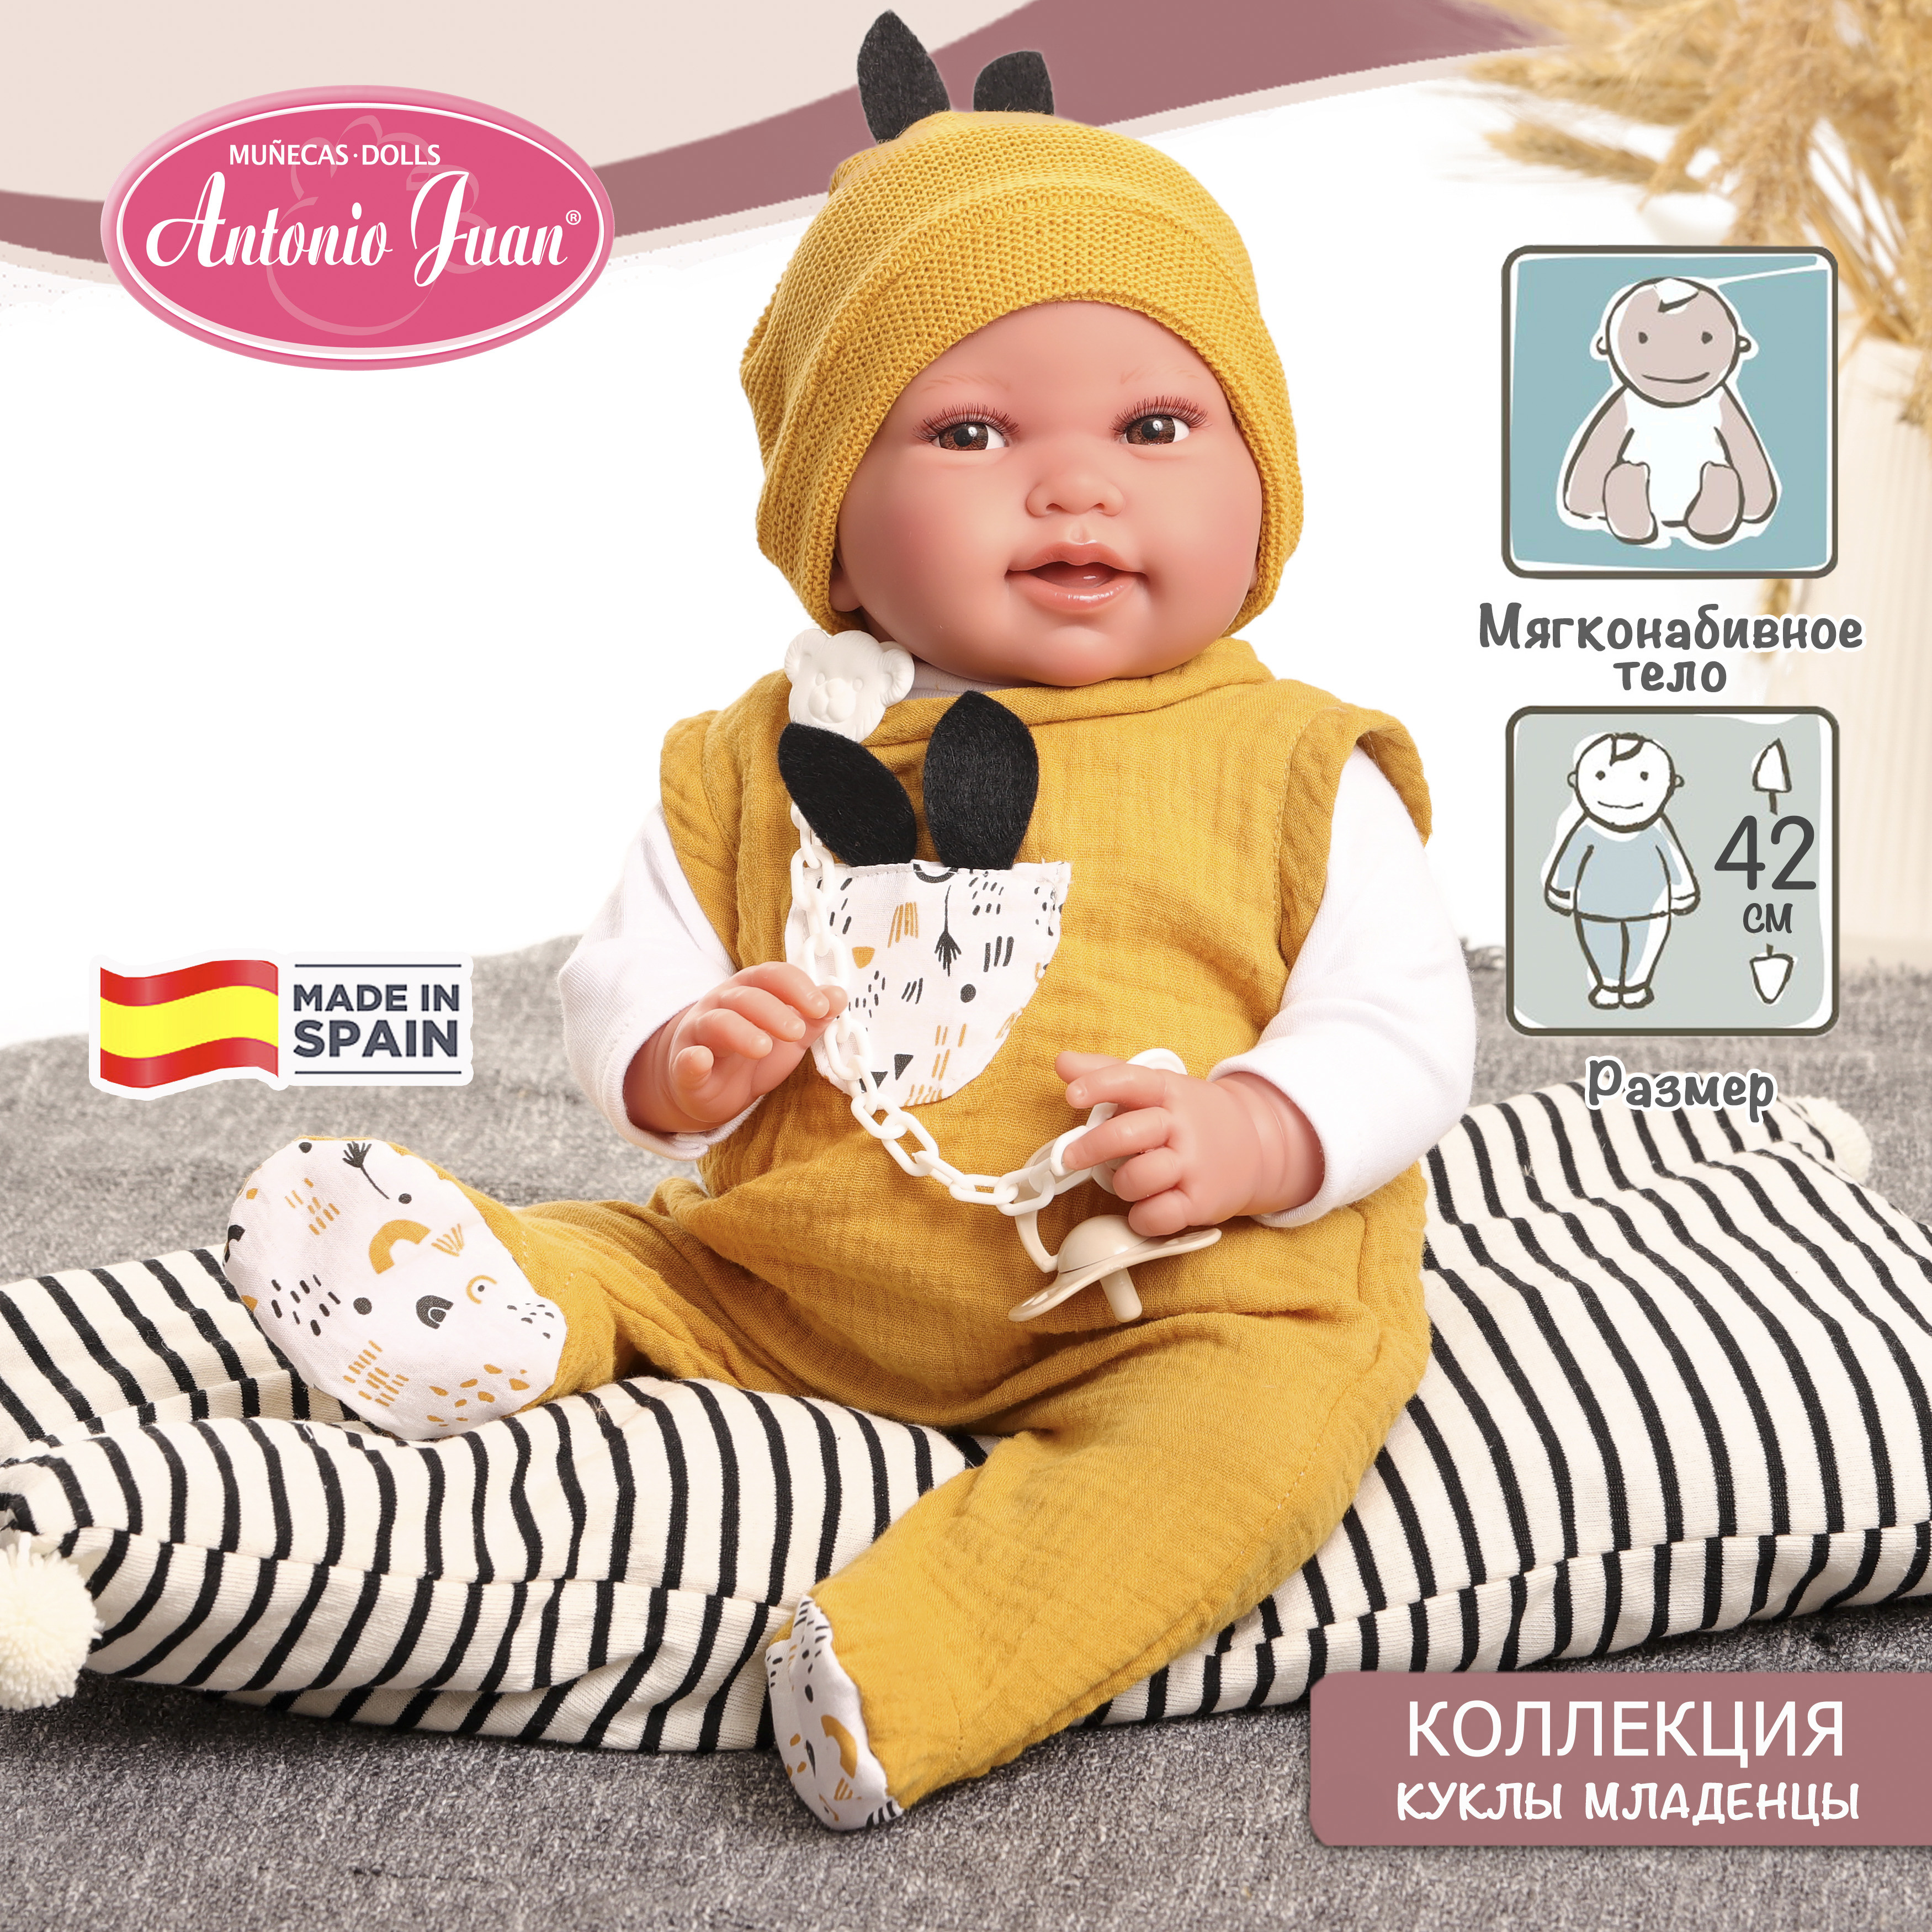 Кукла младенец испанская Antonio Juan Пипо в жёлтом, 42 см, мягконабивная 33234 коляска и кукла в подарок decuevas toys прогулочная 55 см пингвиненок пипо 90547